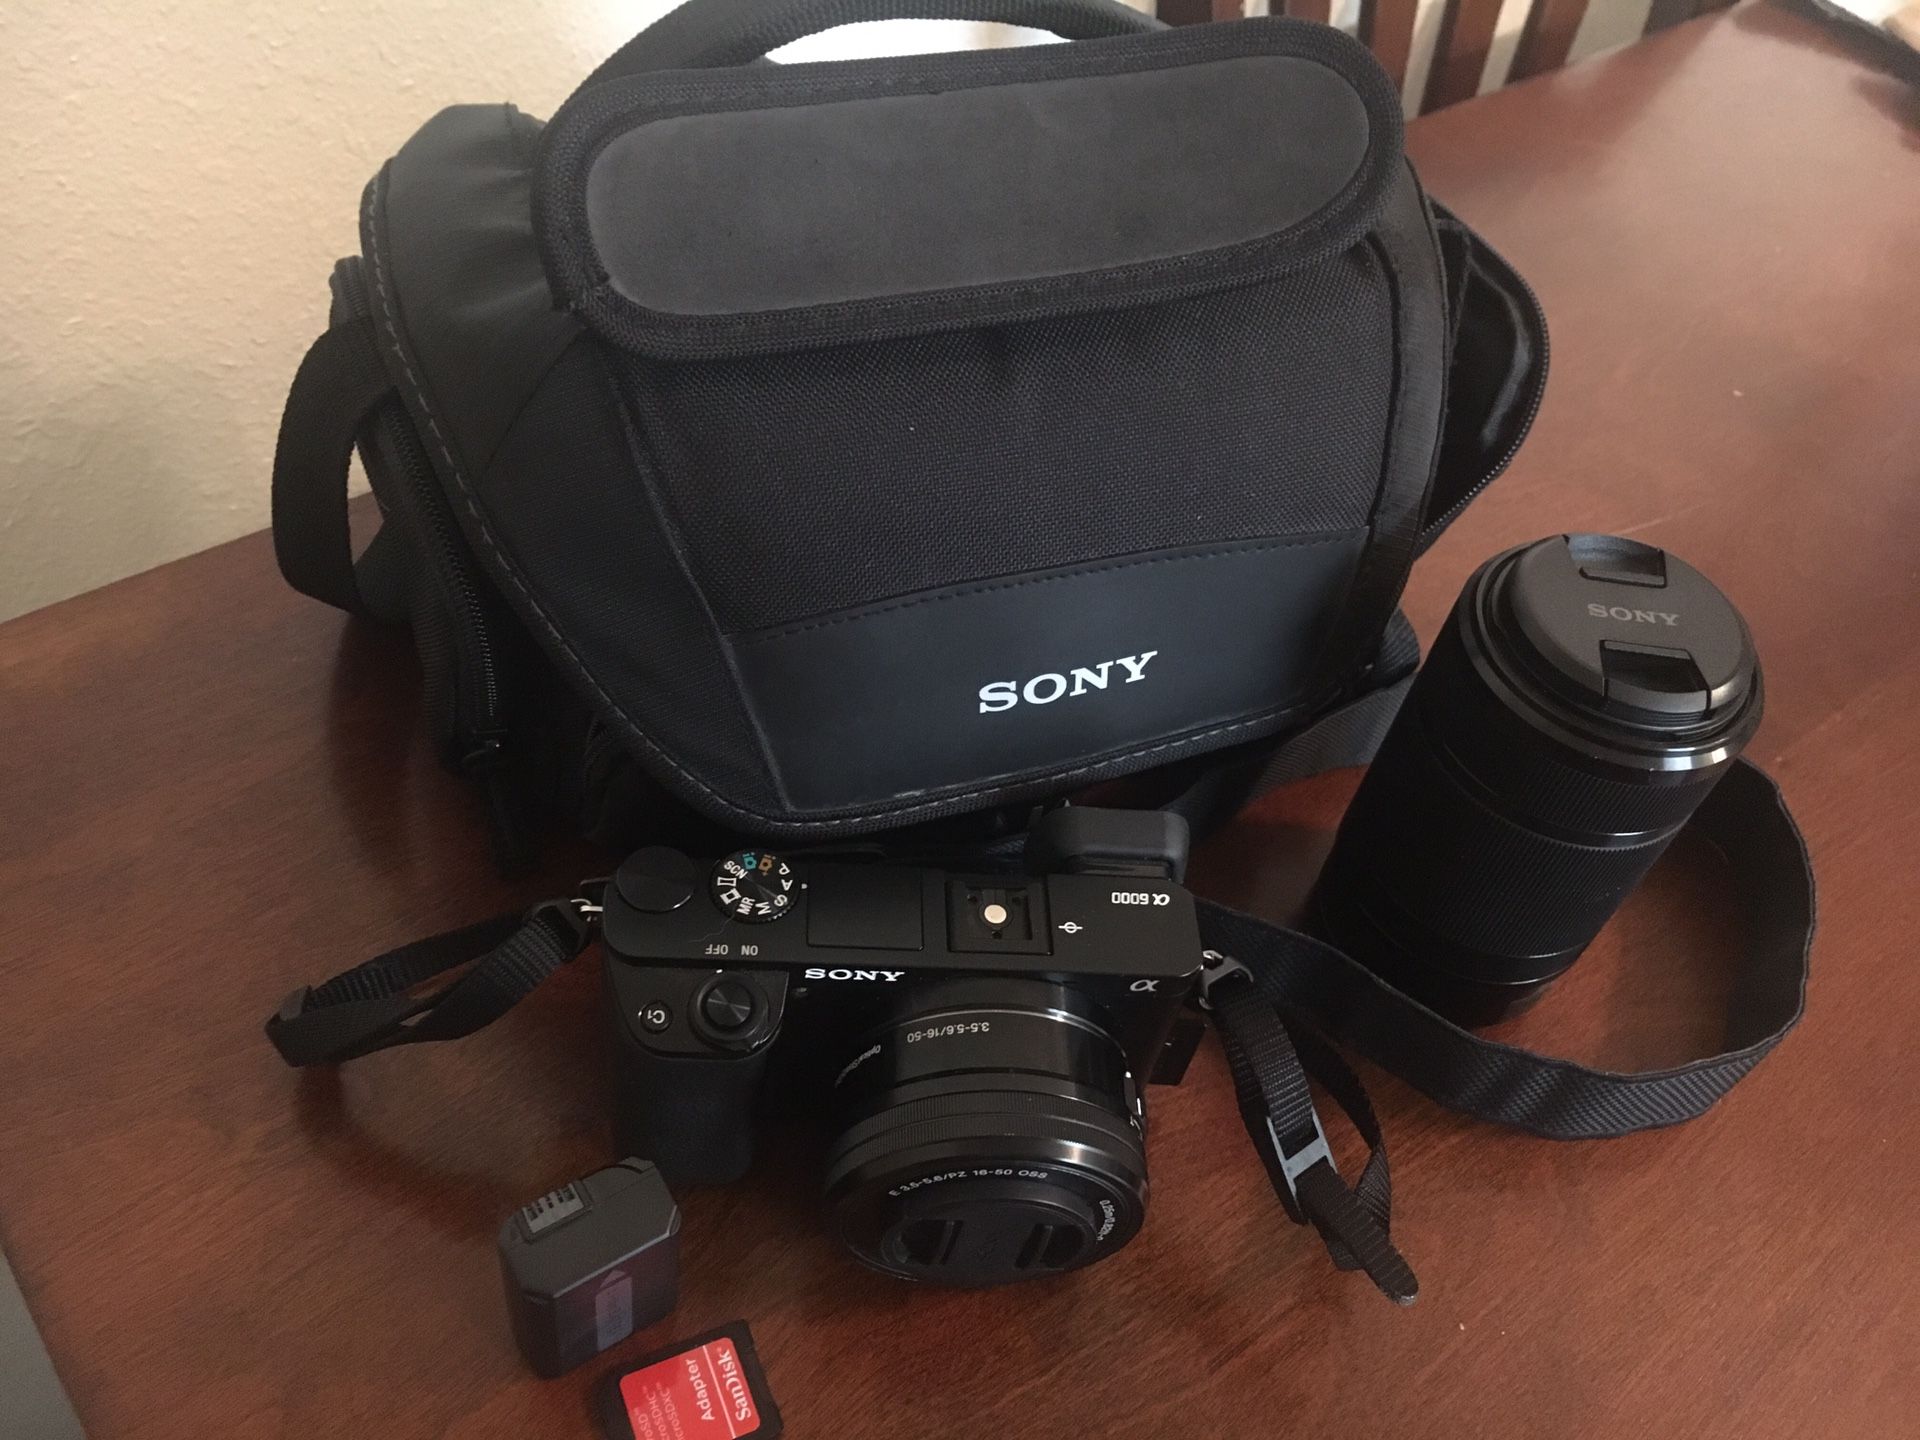 Sony digital camera A6000 Aps-C